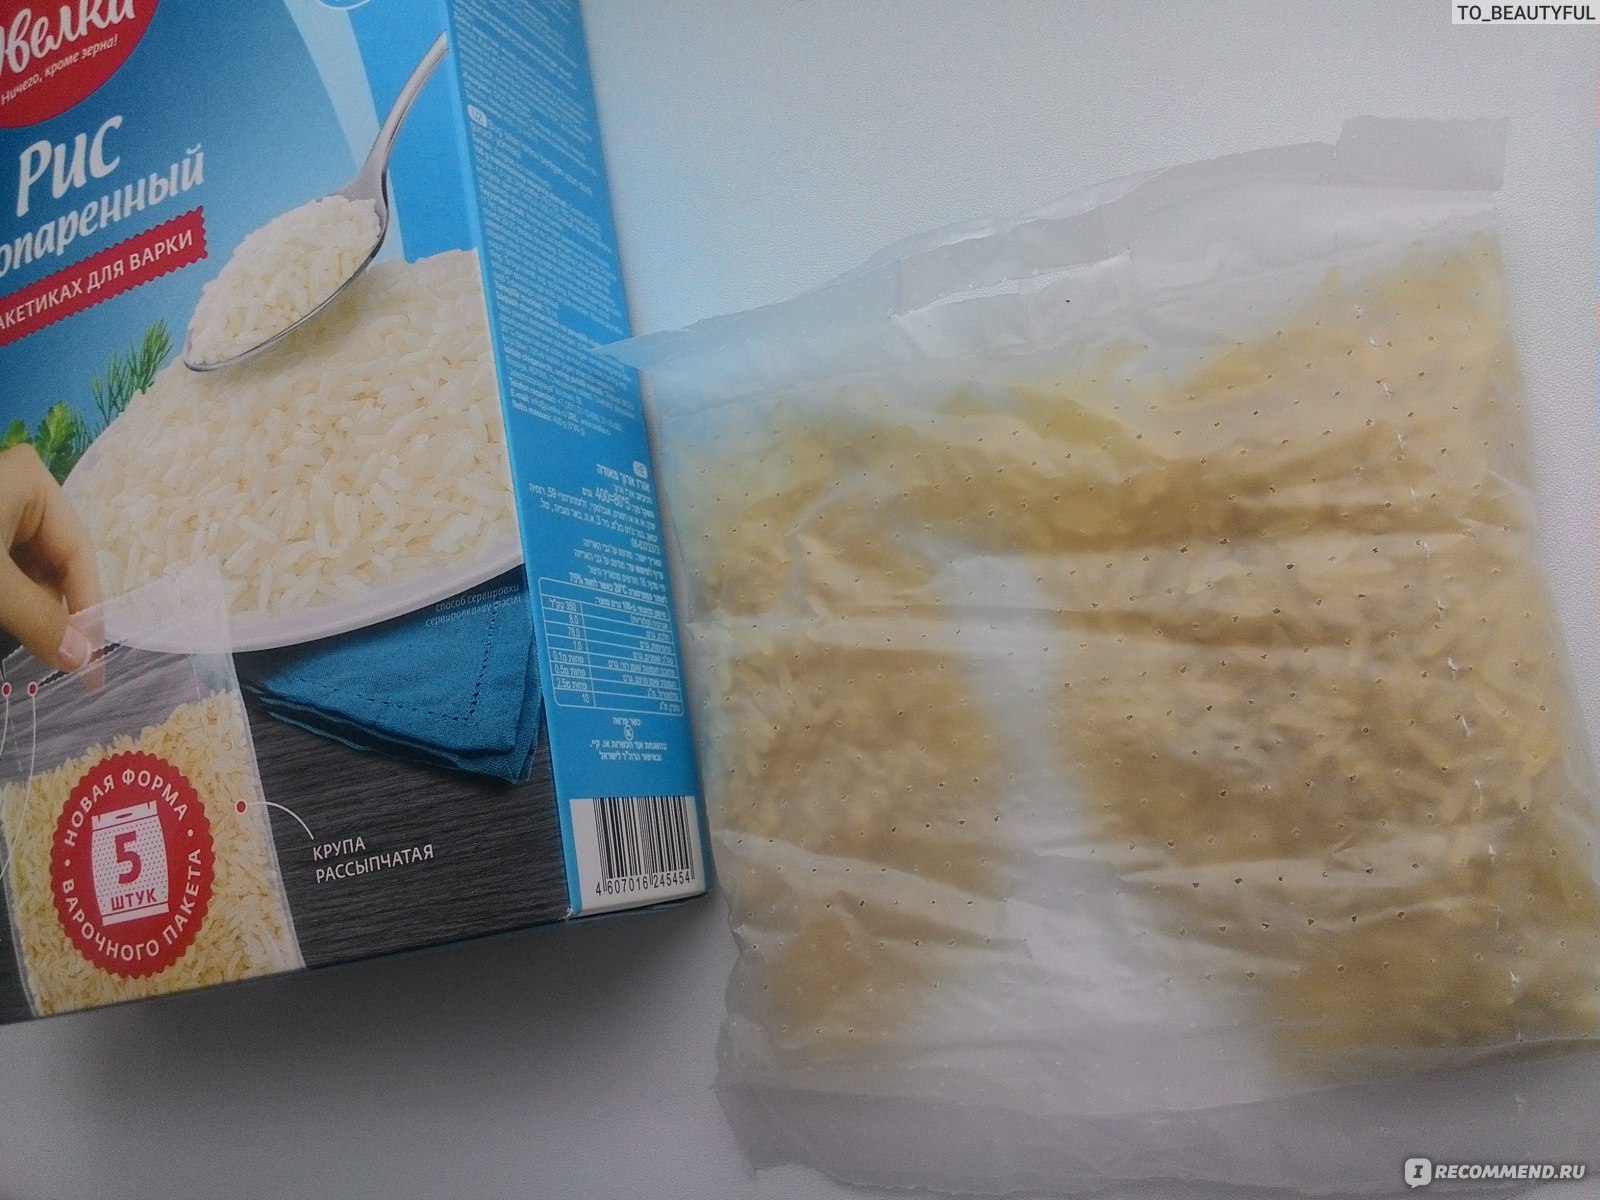 Рис в пакетиках не пропаренный